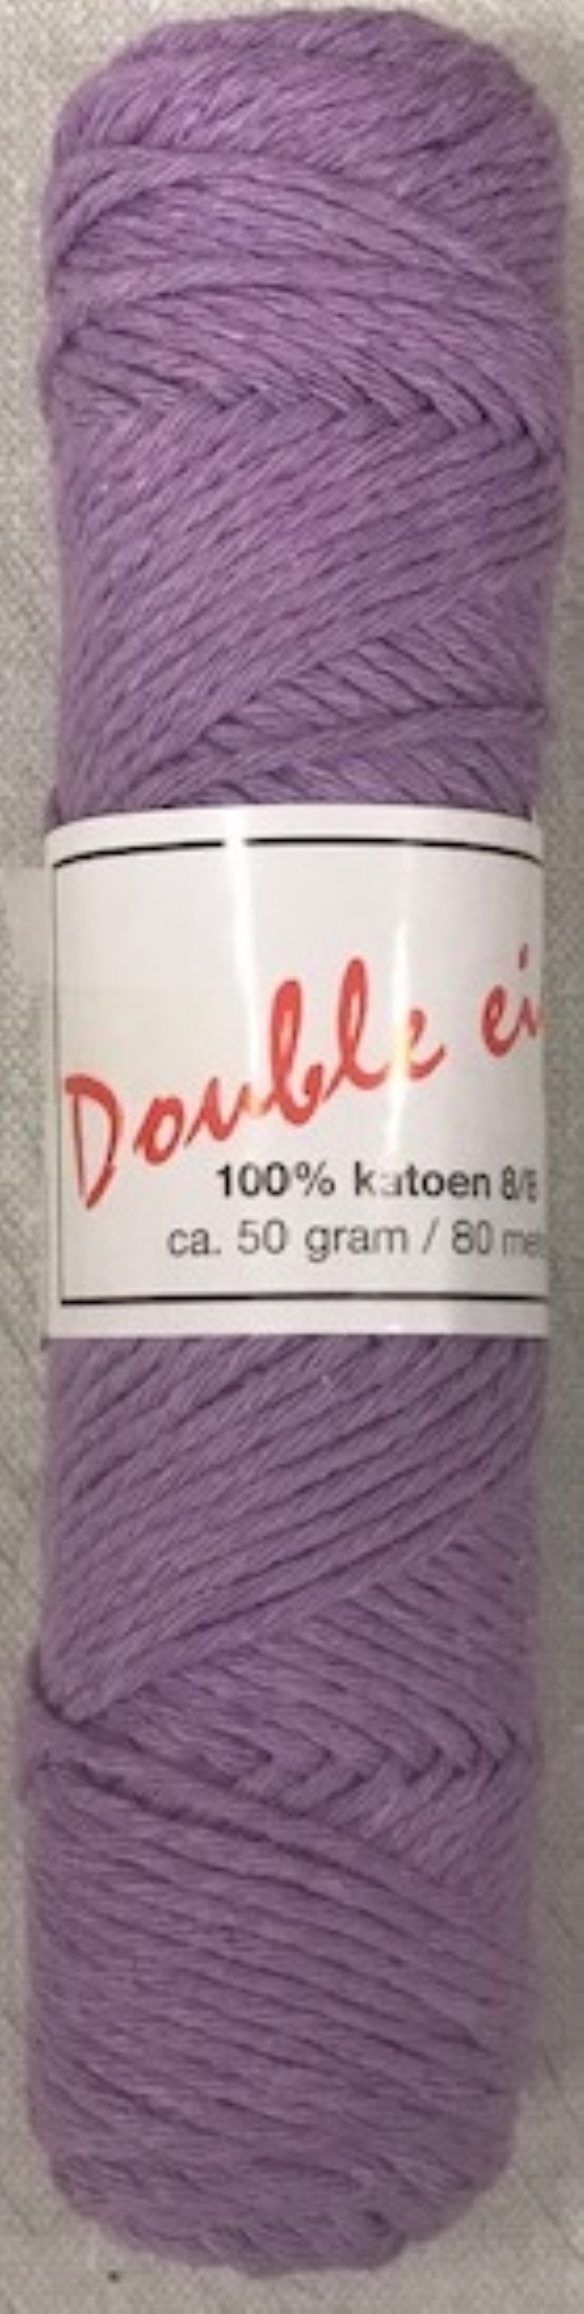 Cotton doubele eight 8/8, katoenen breigaren/haakgaren, 50 gram, lila kopen?